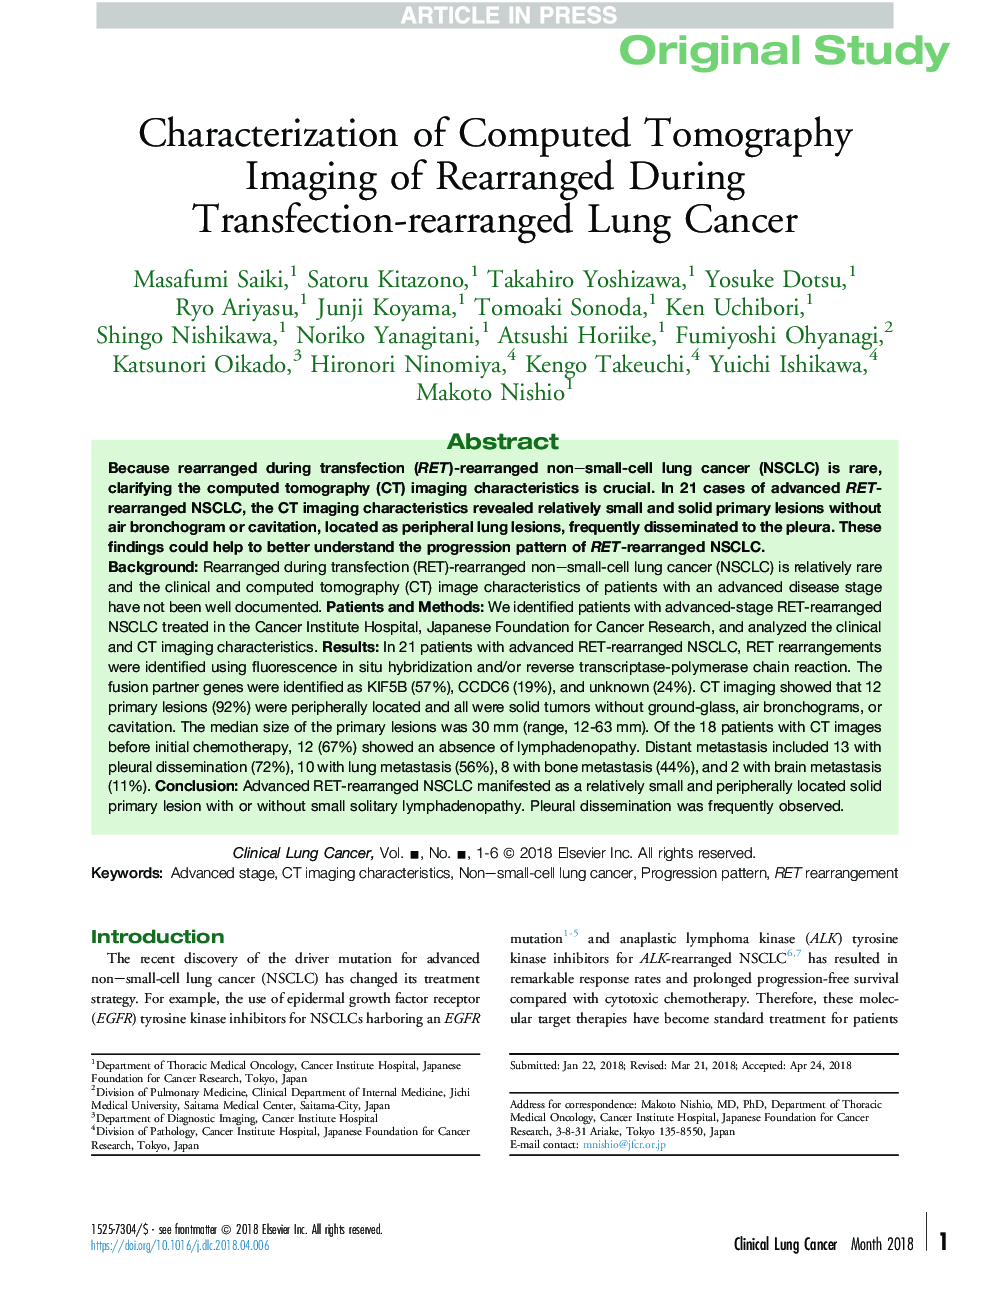 تشخیص تصویربرداری از توموگرافی کامپیوتری در سرطان ریه بازسازی شده ترانسفکشن